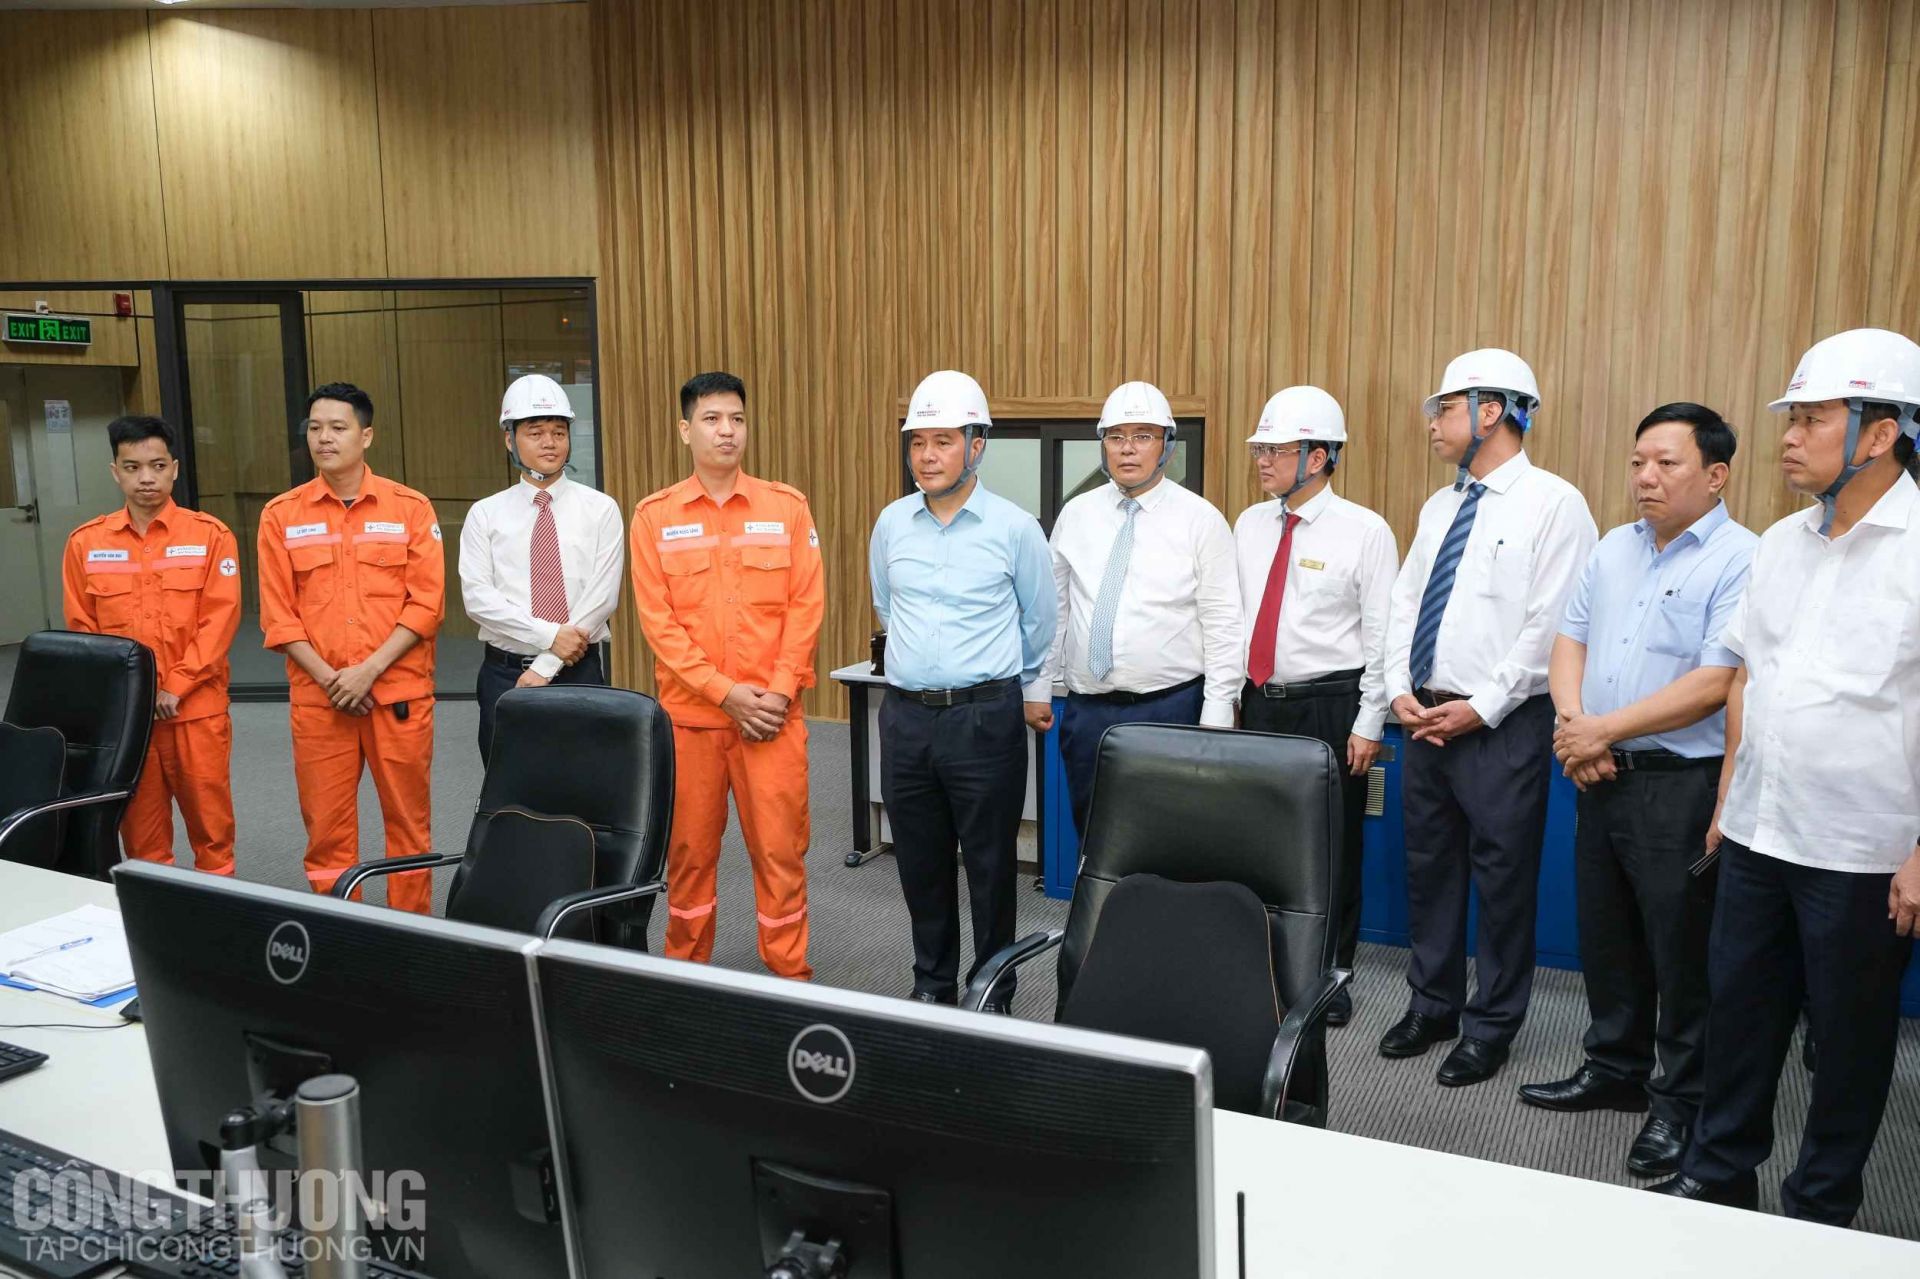 Bộ trưởng Nguyễn Hồng Diên hỏi thăm và tặng quà động viên cán bộ, người lao động tại Nhiệt điện Hải Phòng